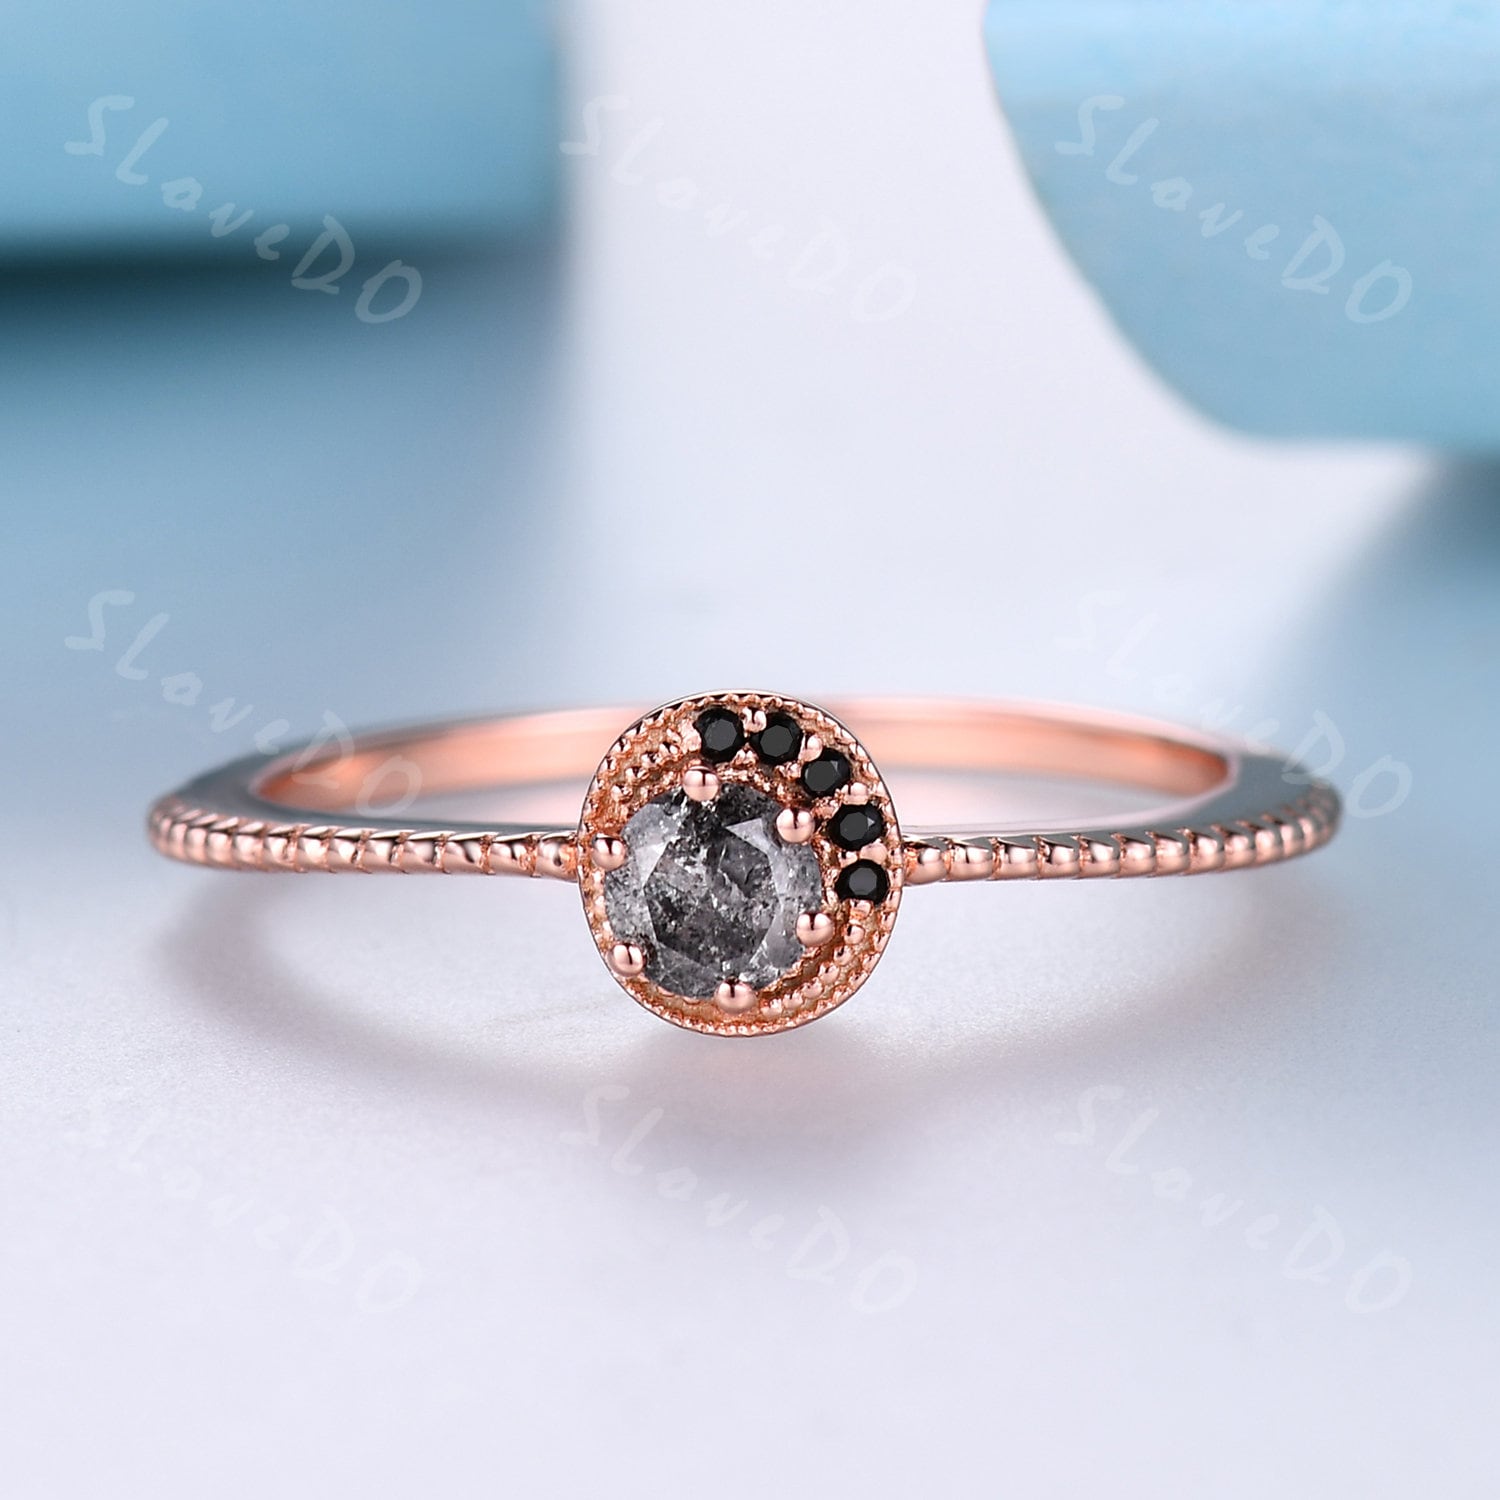 Einzigartiger Salz Und Pfeffer Diamant Verlobungsring Schwarzer Ring Vintage Ehering Roségold Brautring Geschenk Für Sie von SLoveDO